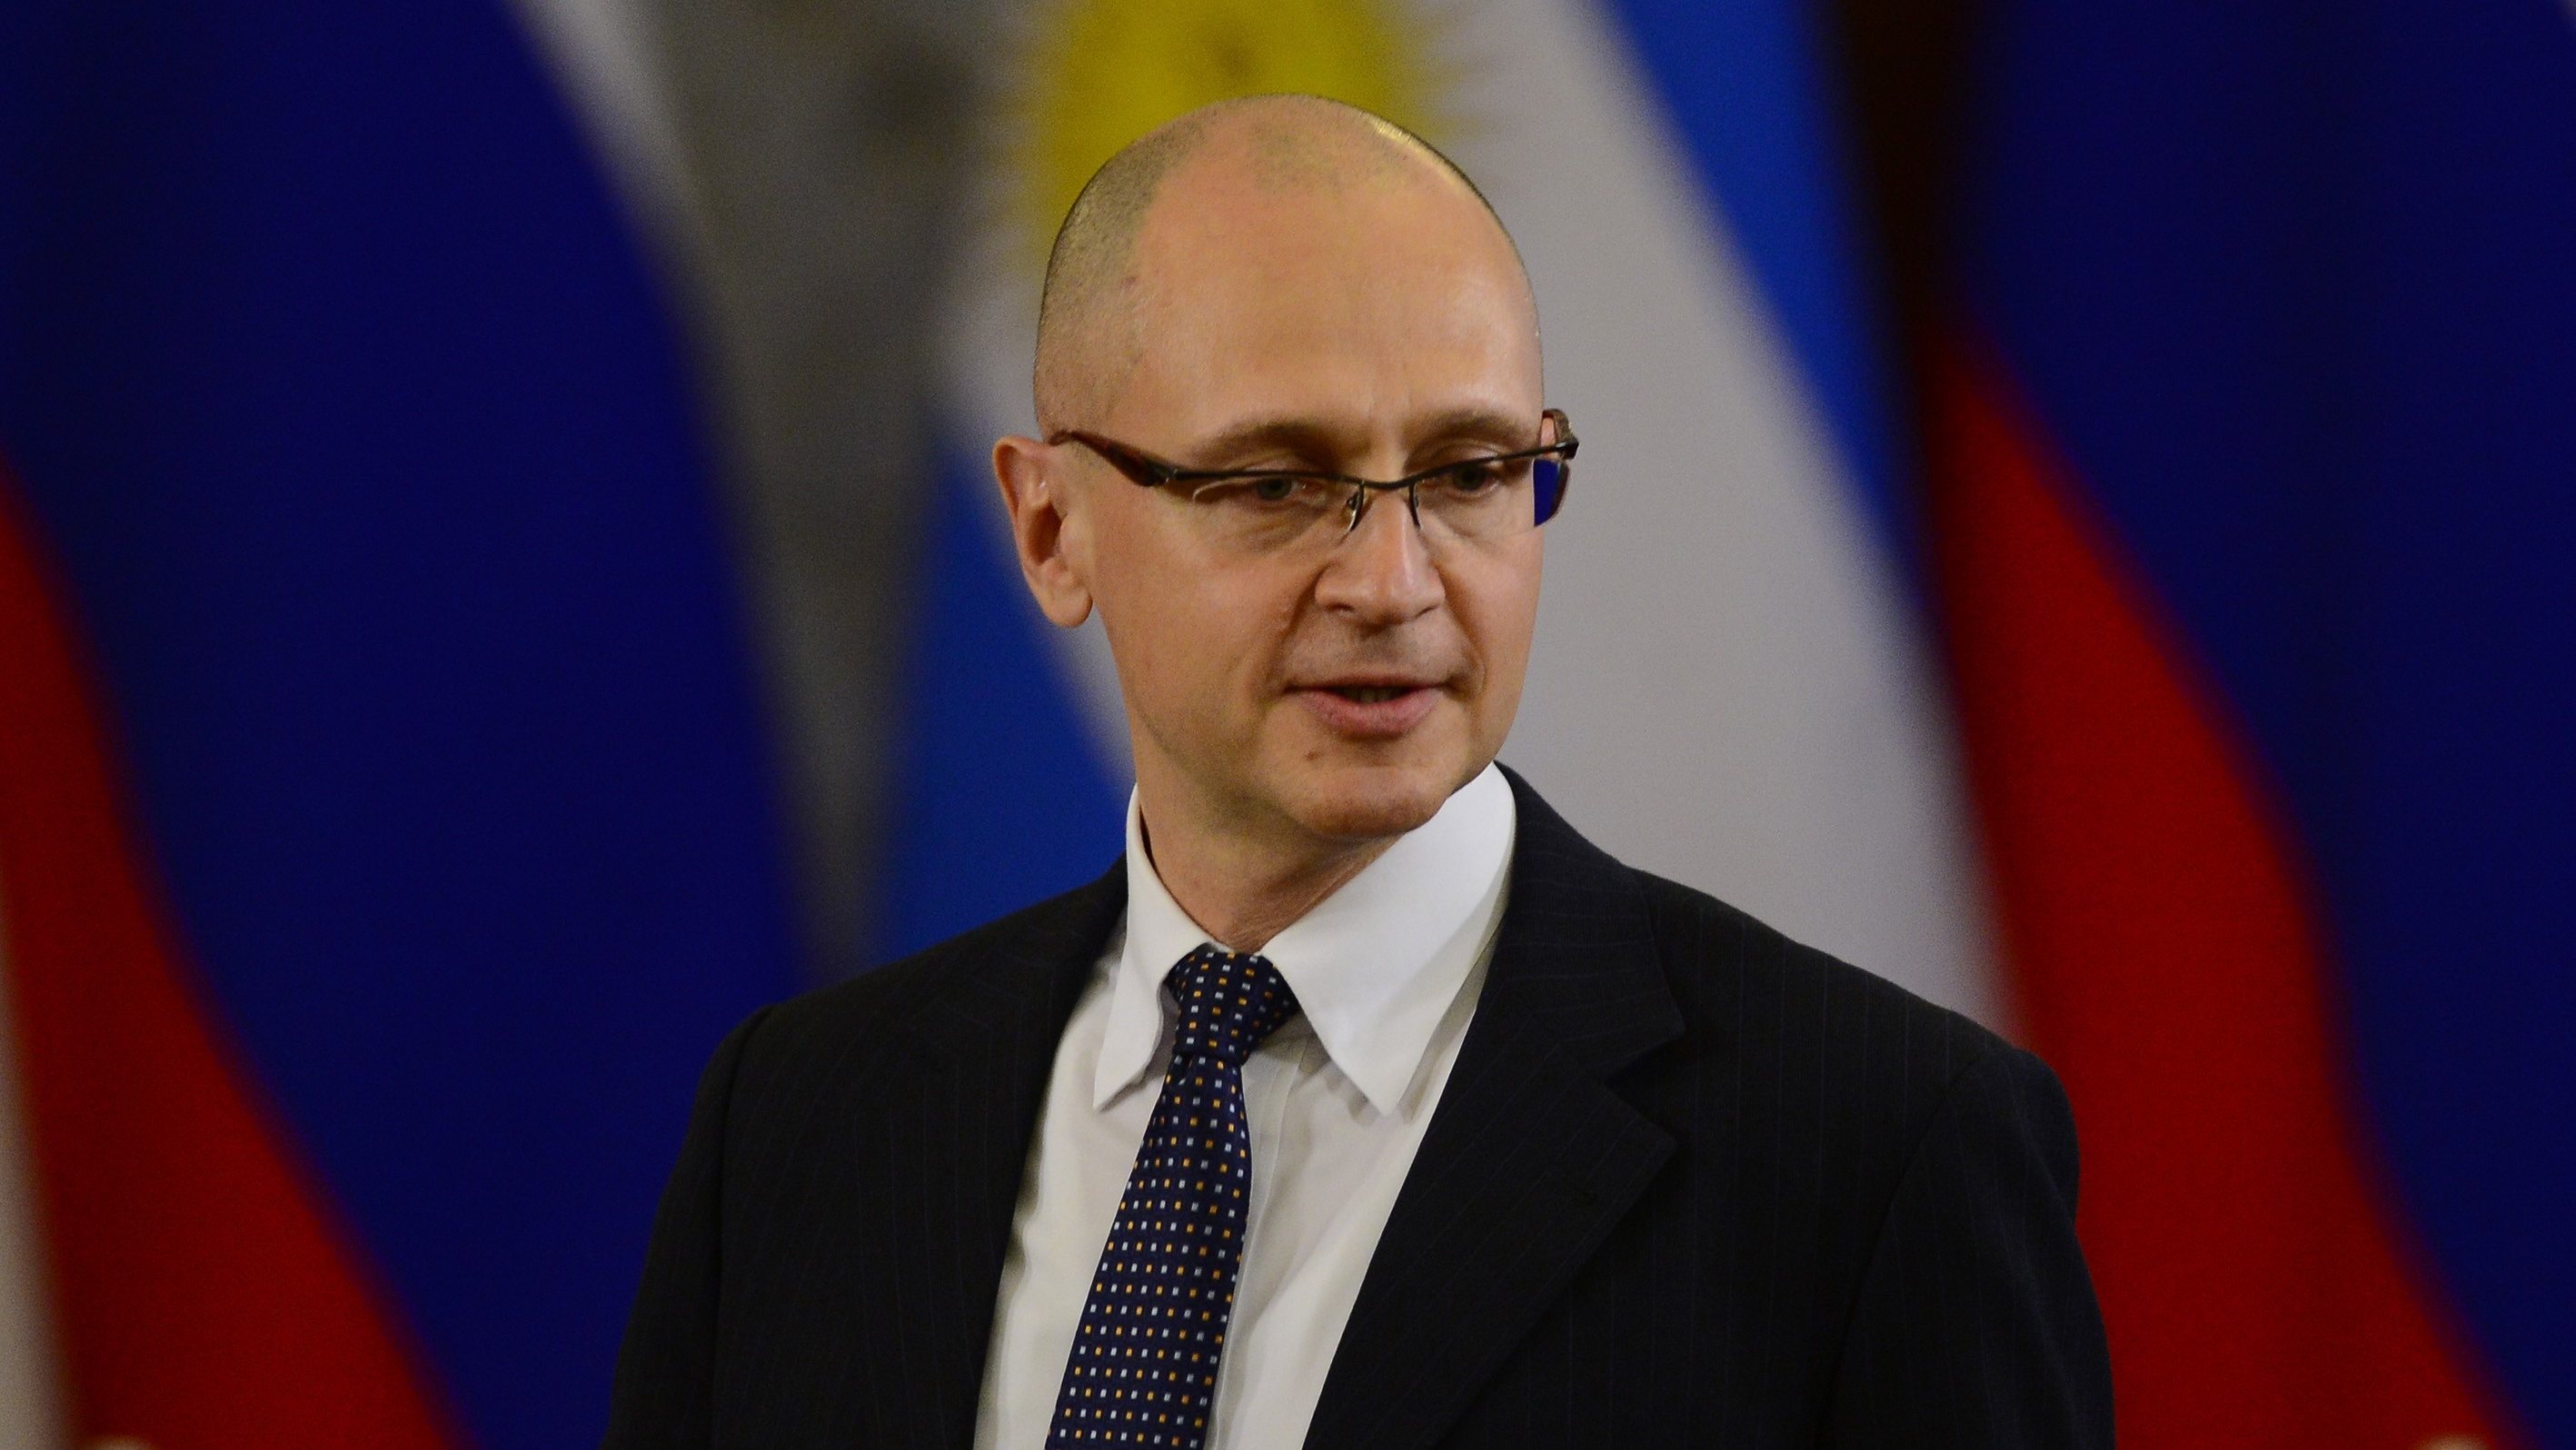 Rosatom nuclear corporation chief Sergei Kiriyenko